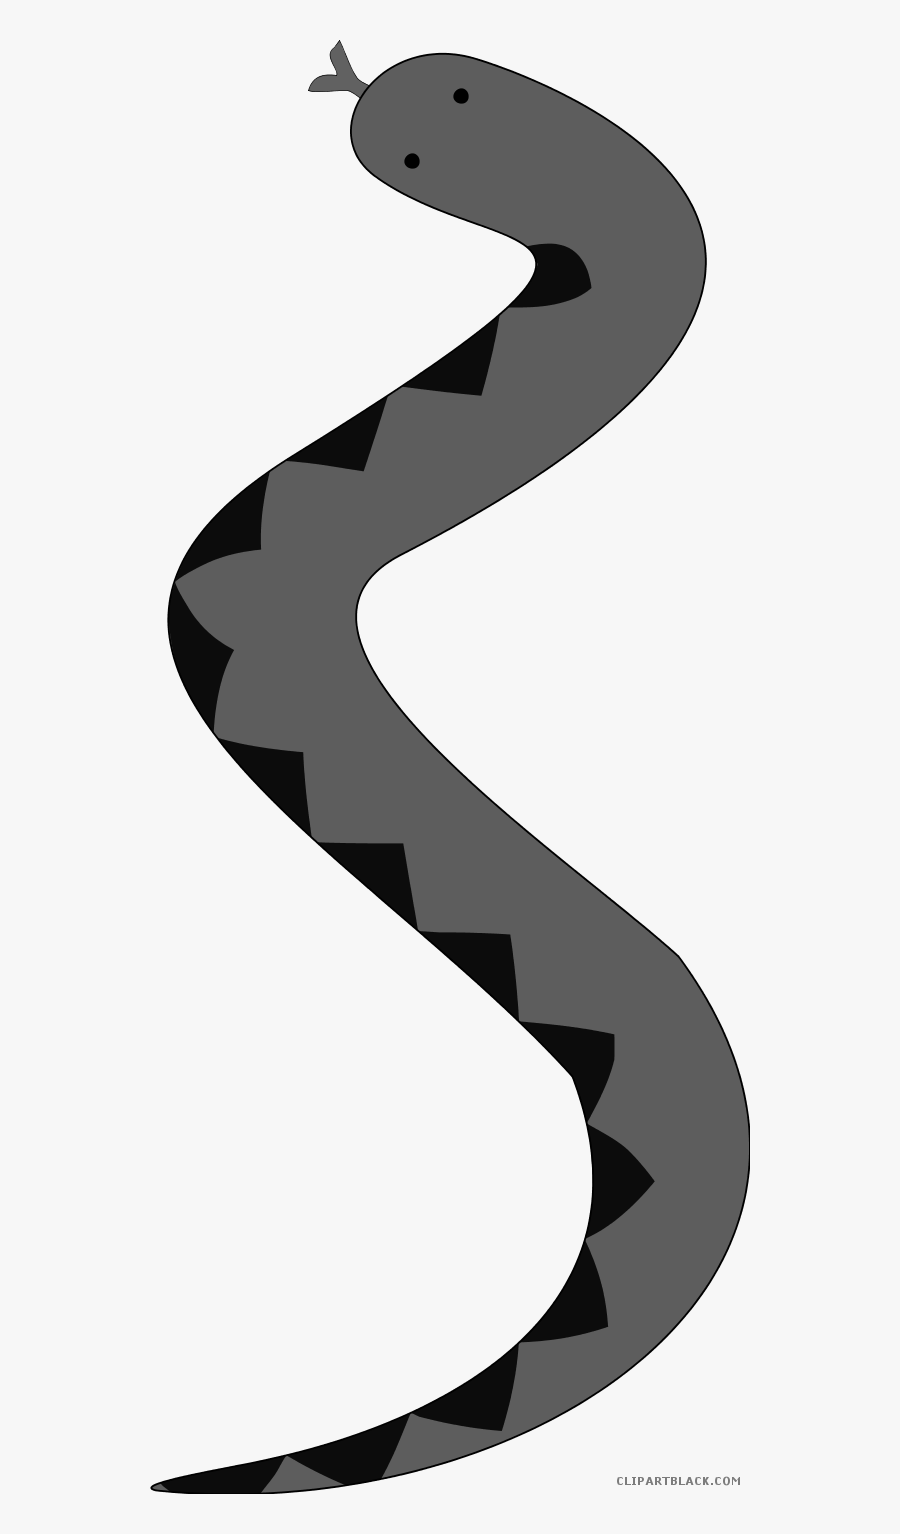 Transparent Black Snake Png - Snake And Ladder Clipart, Transparent Clipart